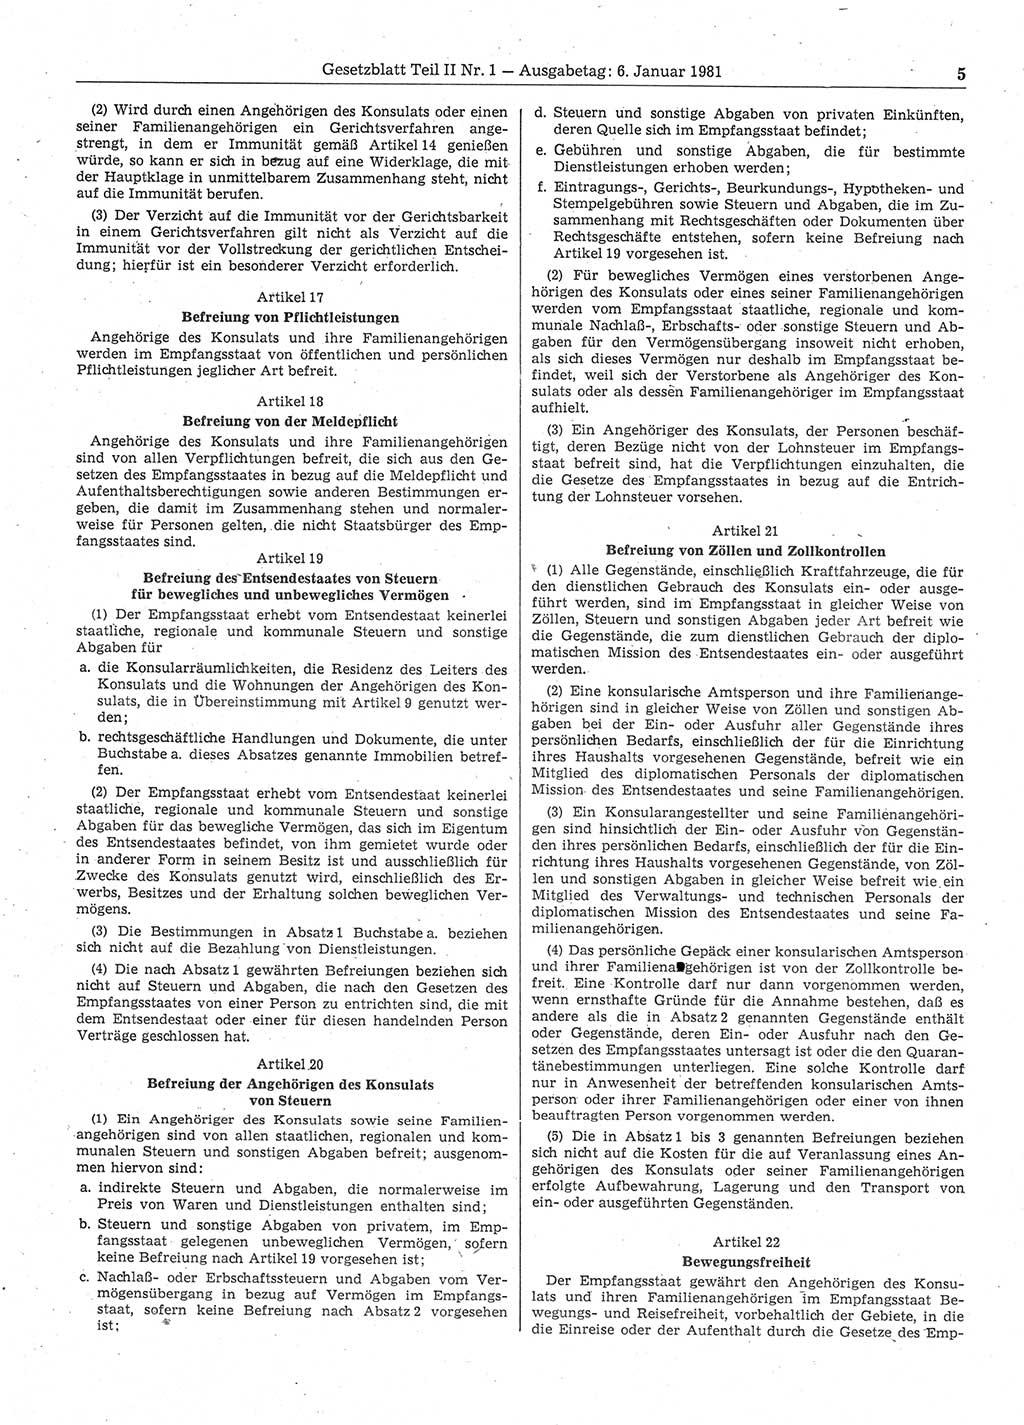 Gesetzblatt (GBl.) der Deutschen Demokratischen Republik (DDR) Teil ⅠⅠ 1981, Seite 5 (GBl. DDR ⅠⅠ 1981, S. 5)